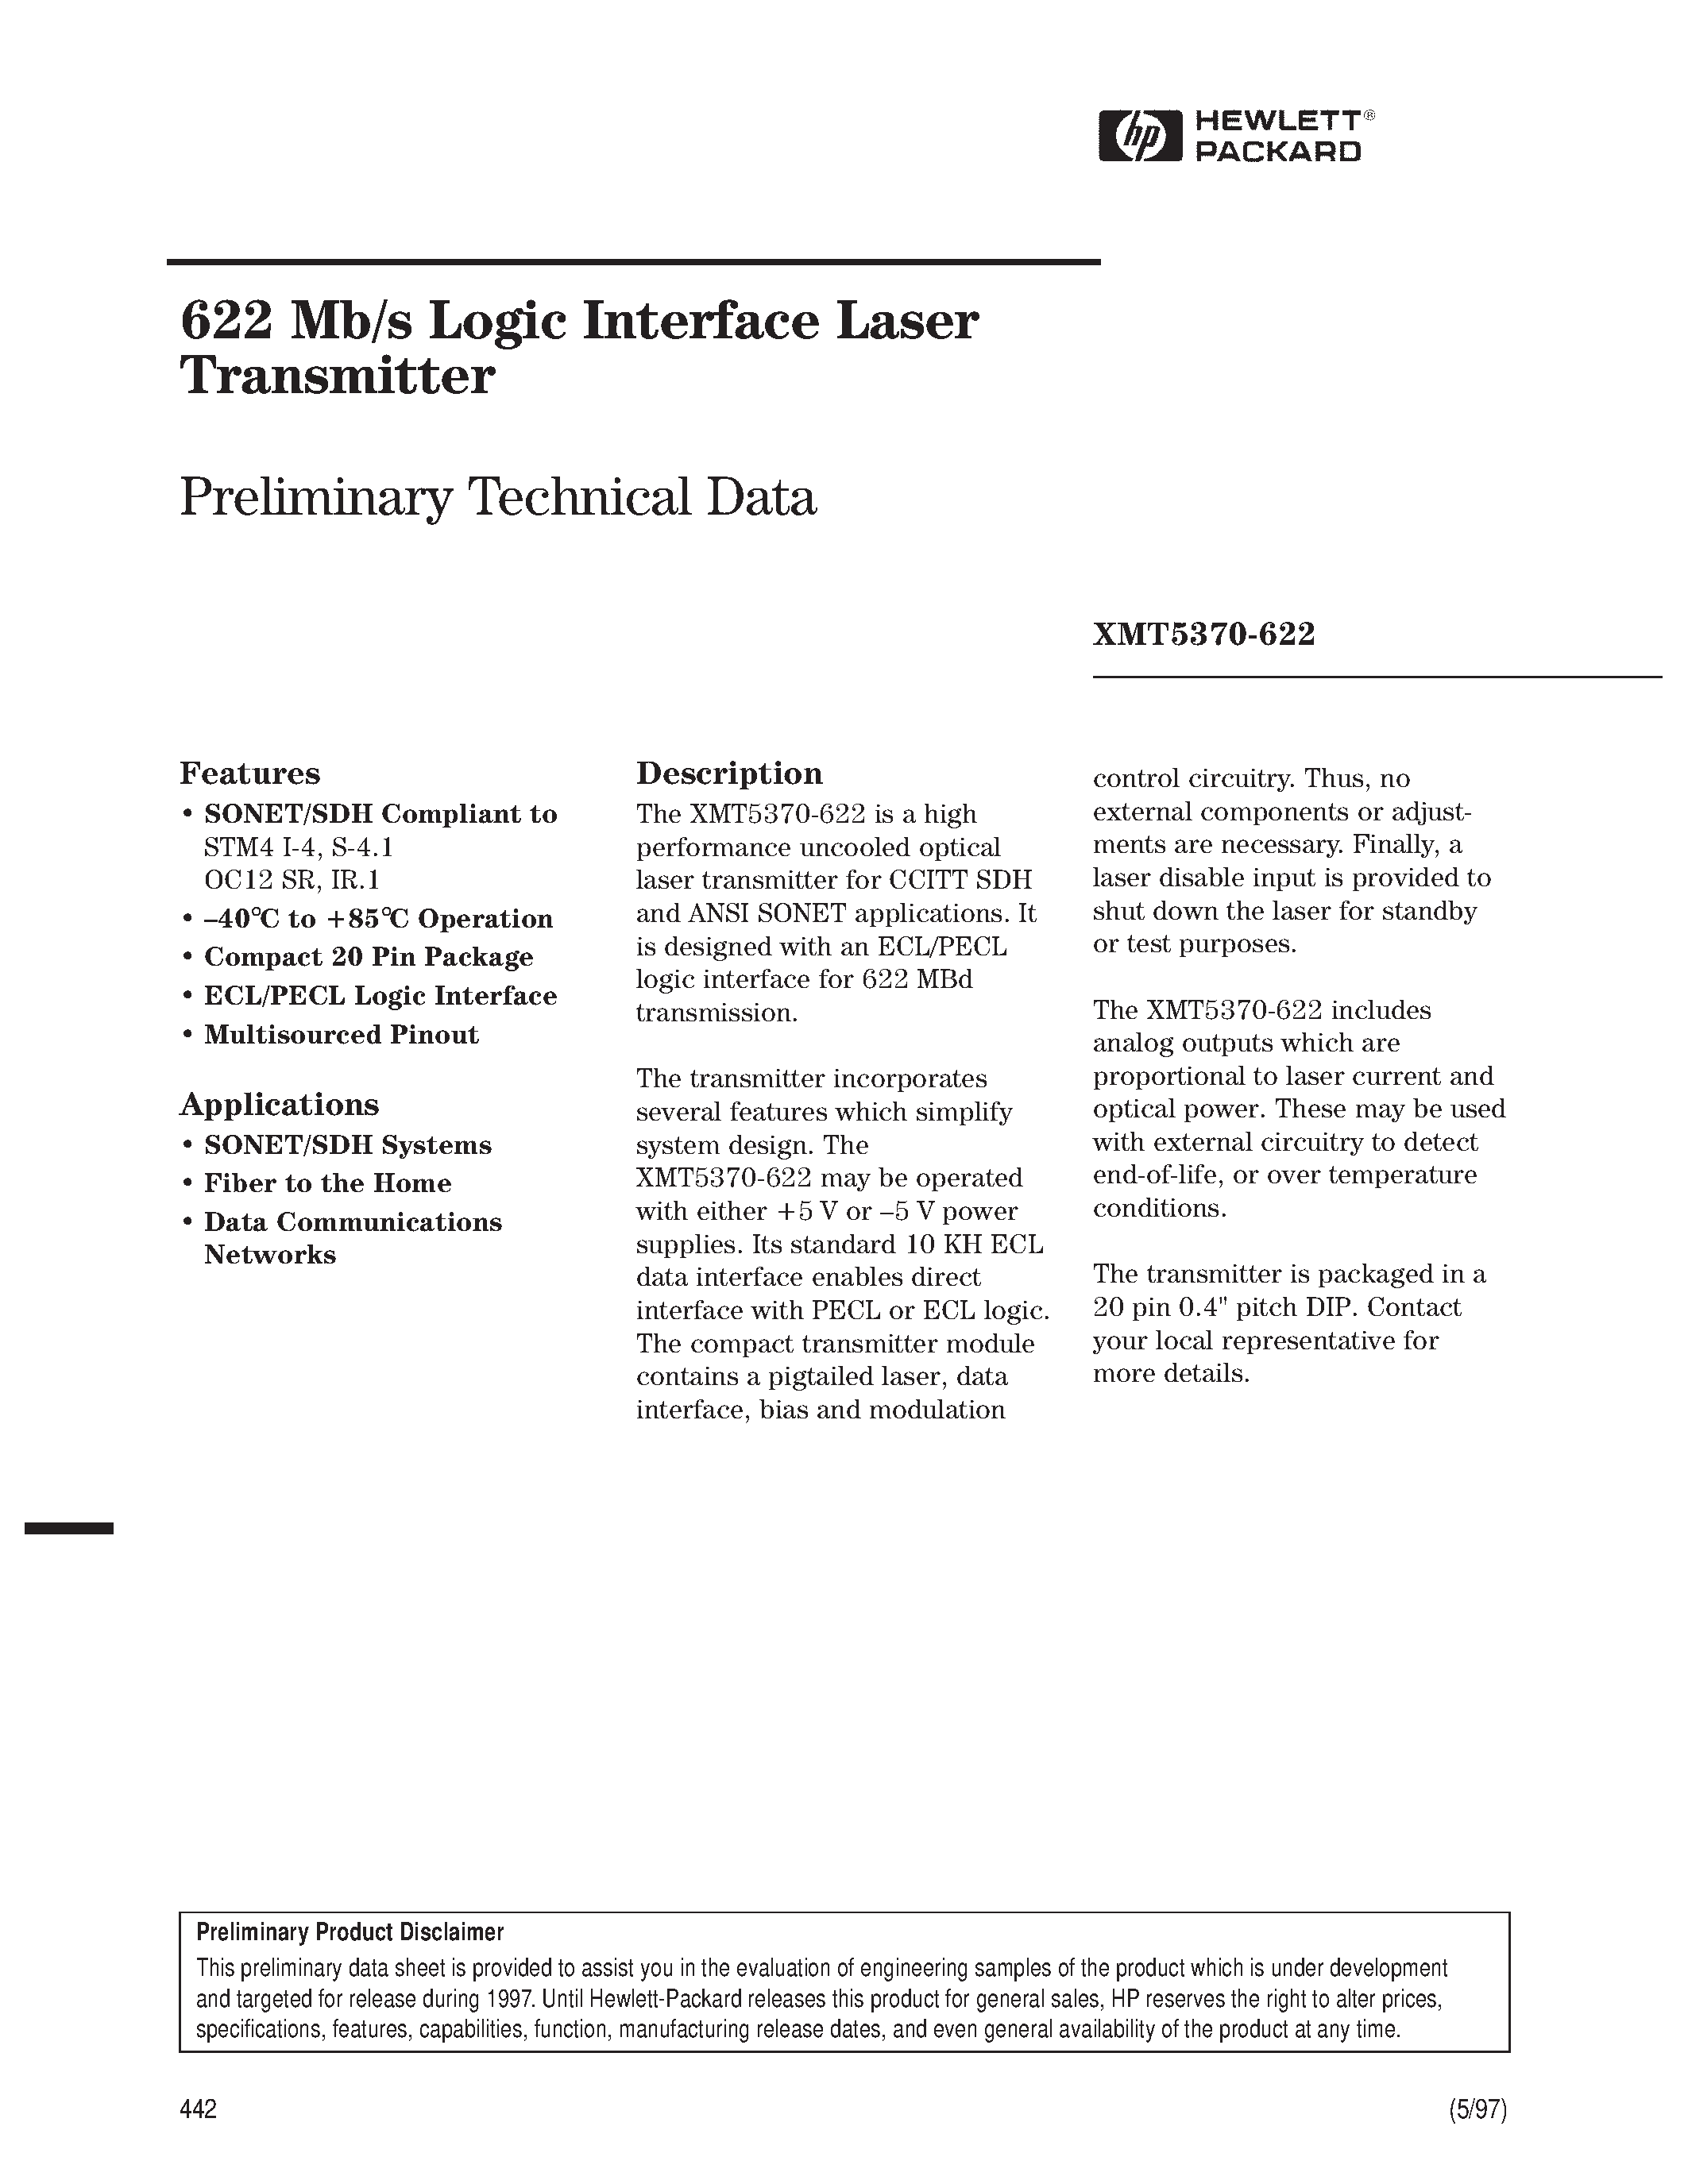 Datasheet XMT5370-622 - 622 Mb/s Logic Interface Laser Transmitter page 1